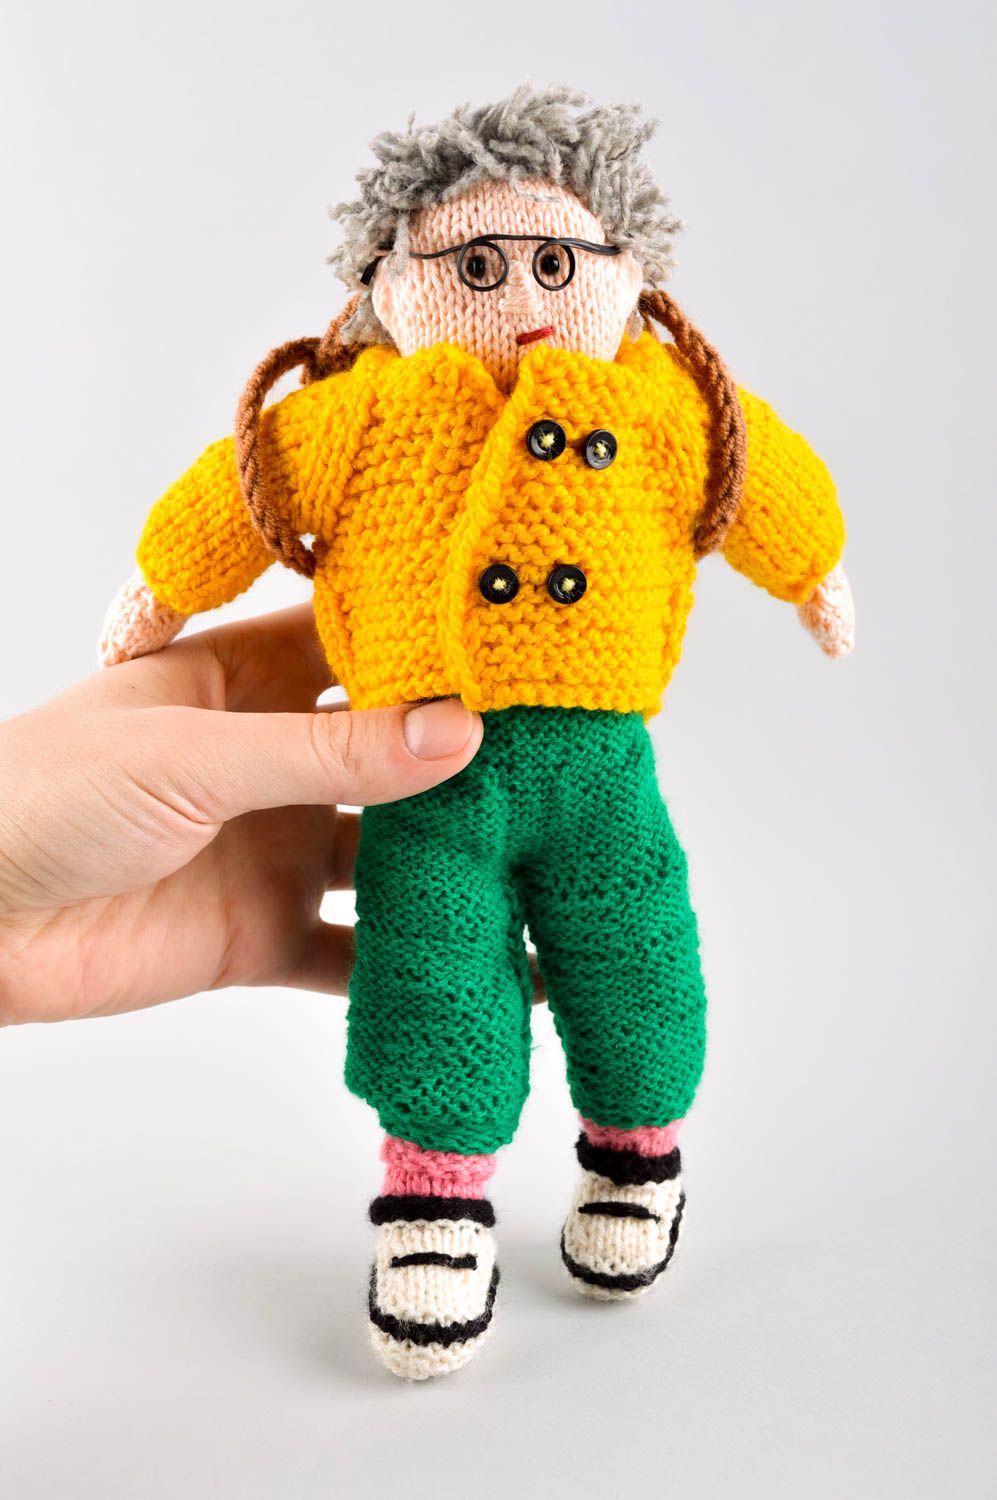 Handmade doll crocheted doll stuffed toy for babies nursery decor ideas photo 5